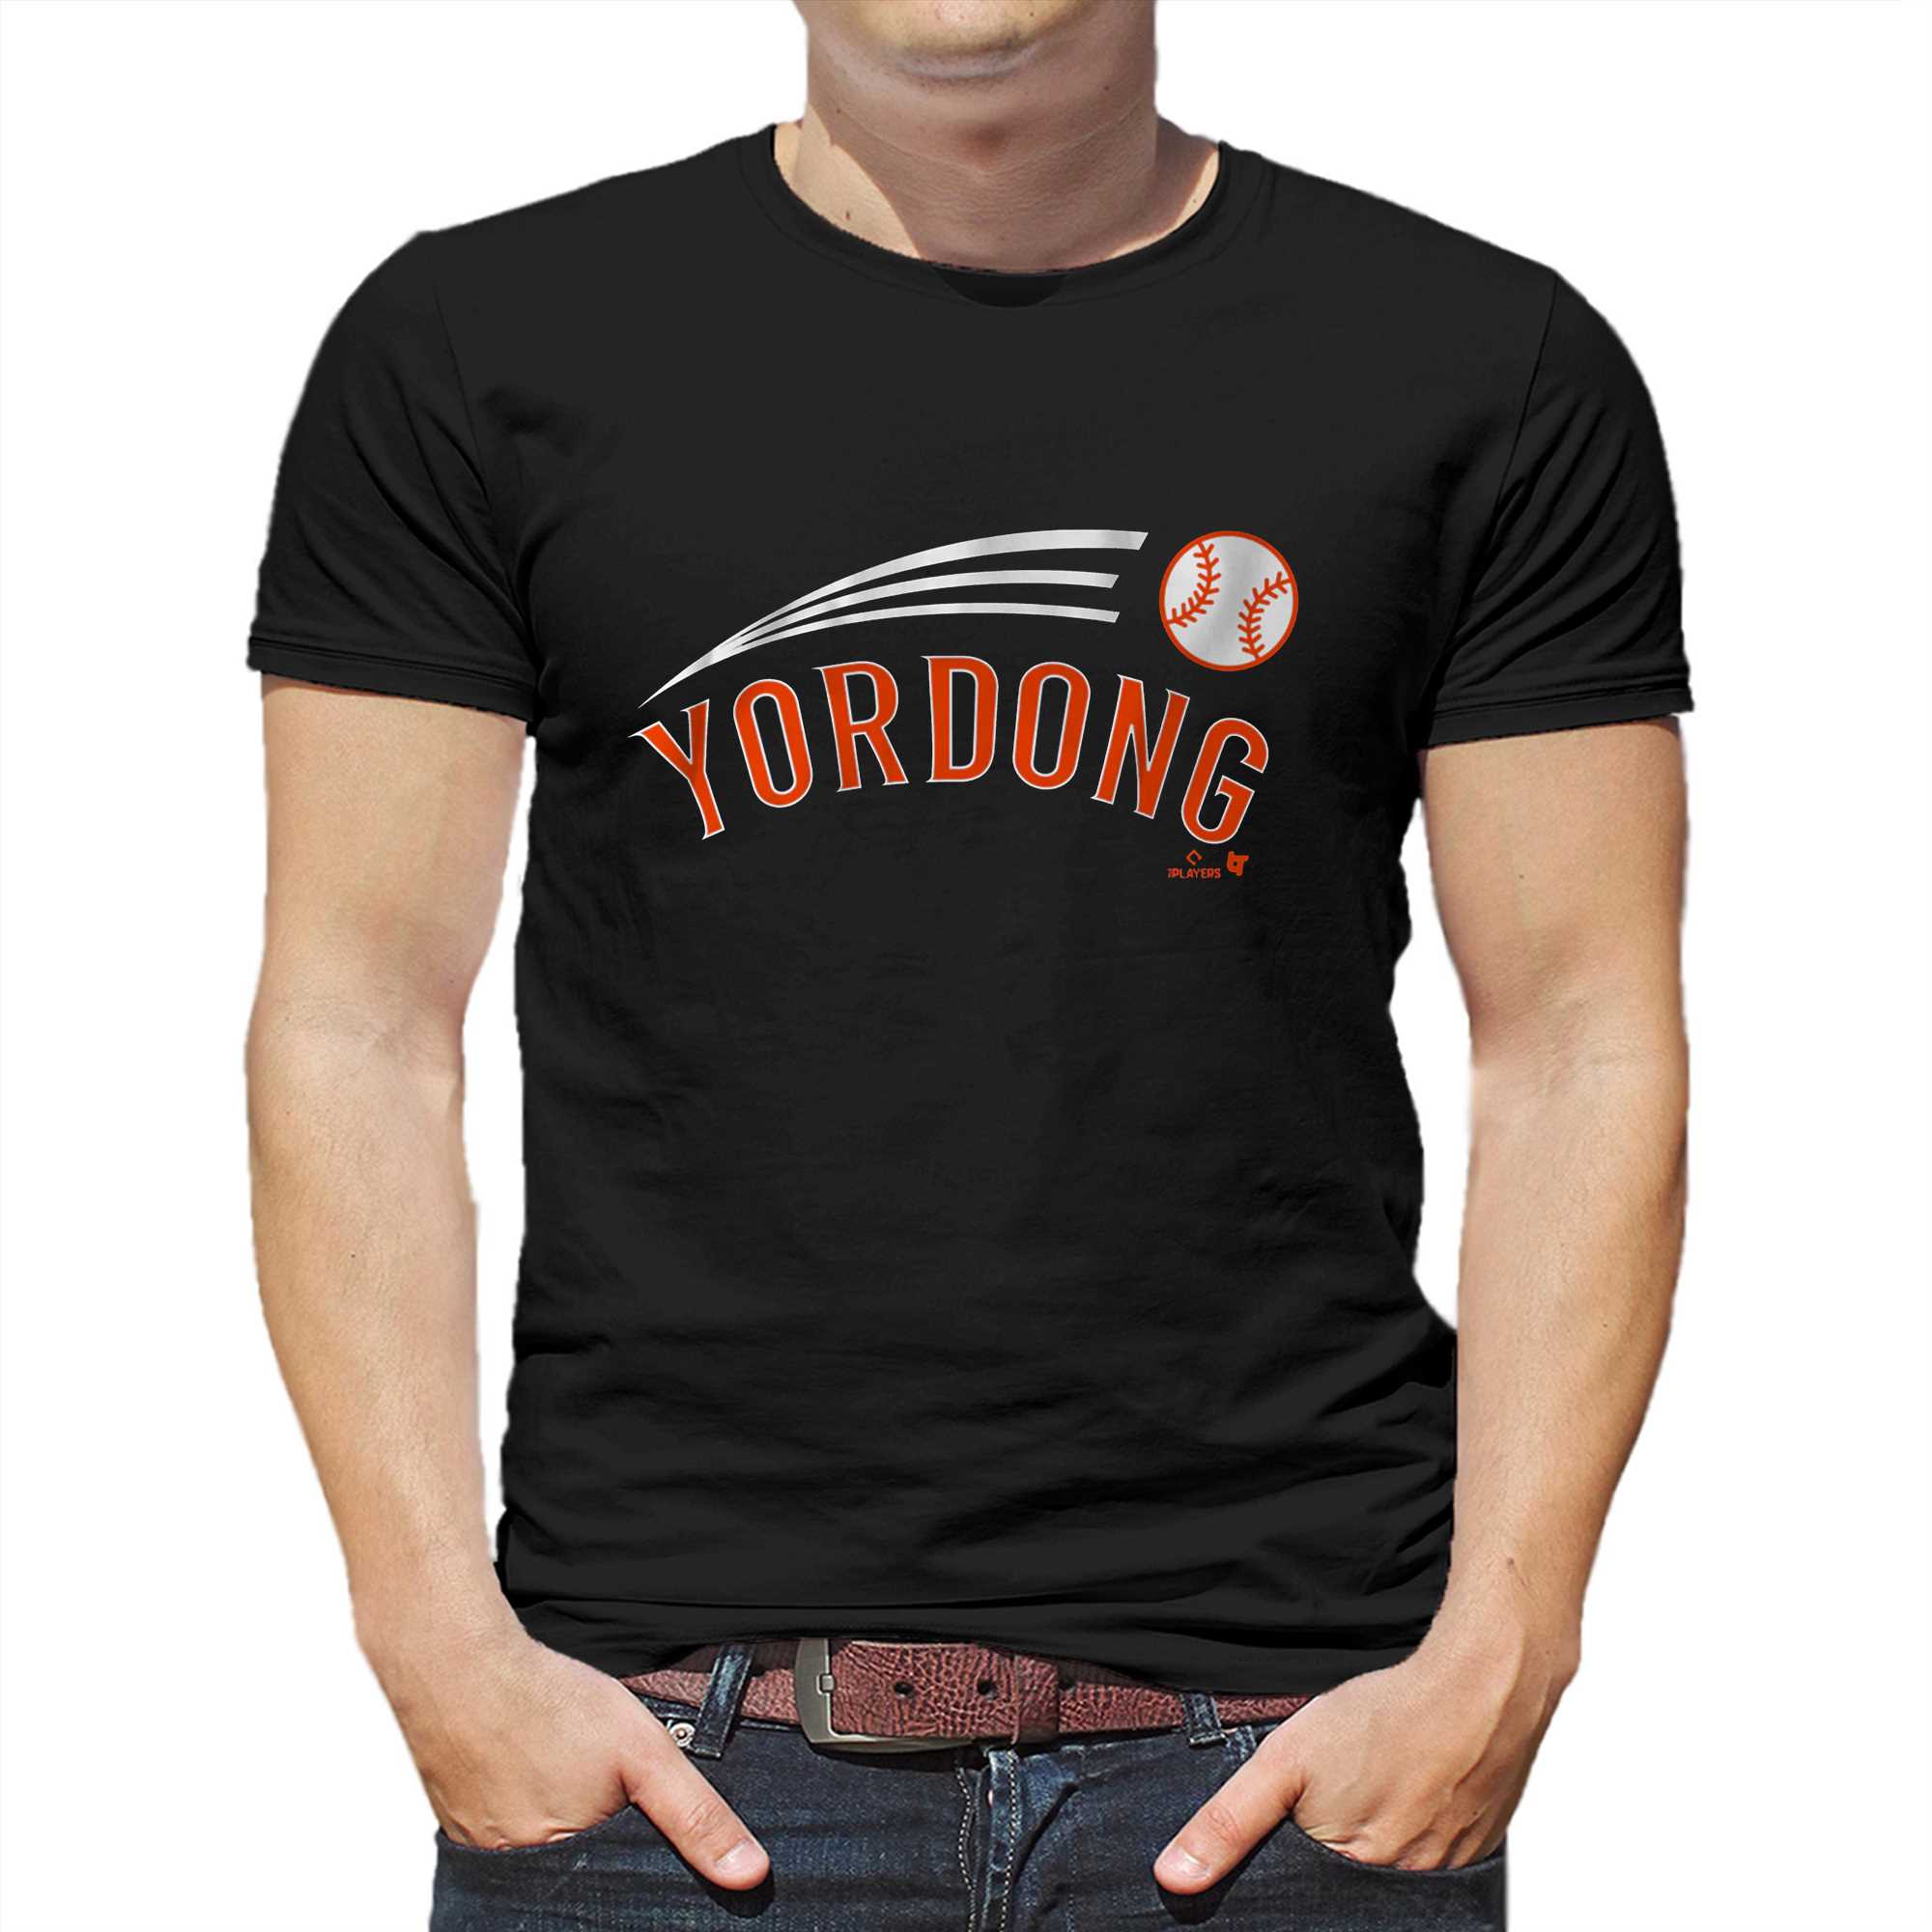 Yordan Alvarez Yordong Shirt - Shibtee Clothing